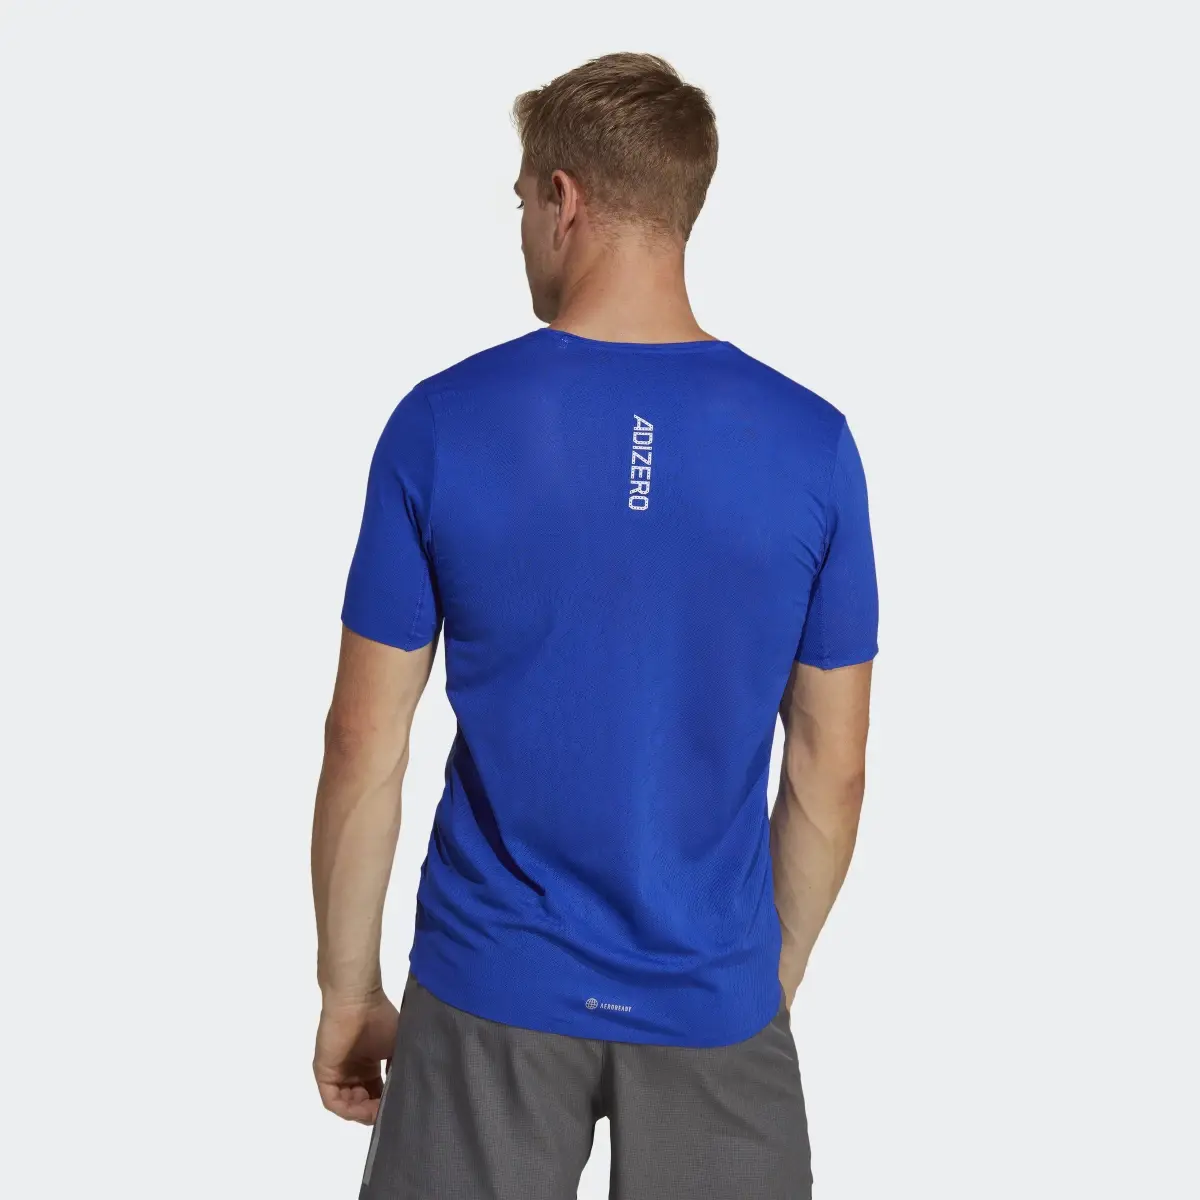 Adidas Adizero T-Shirt. 3